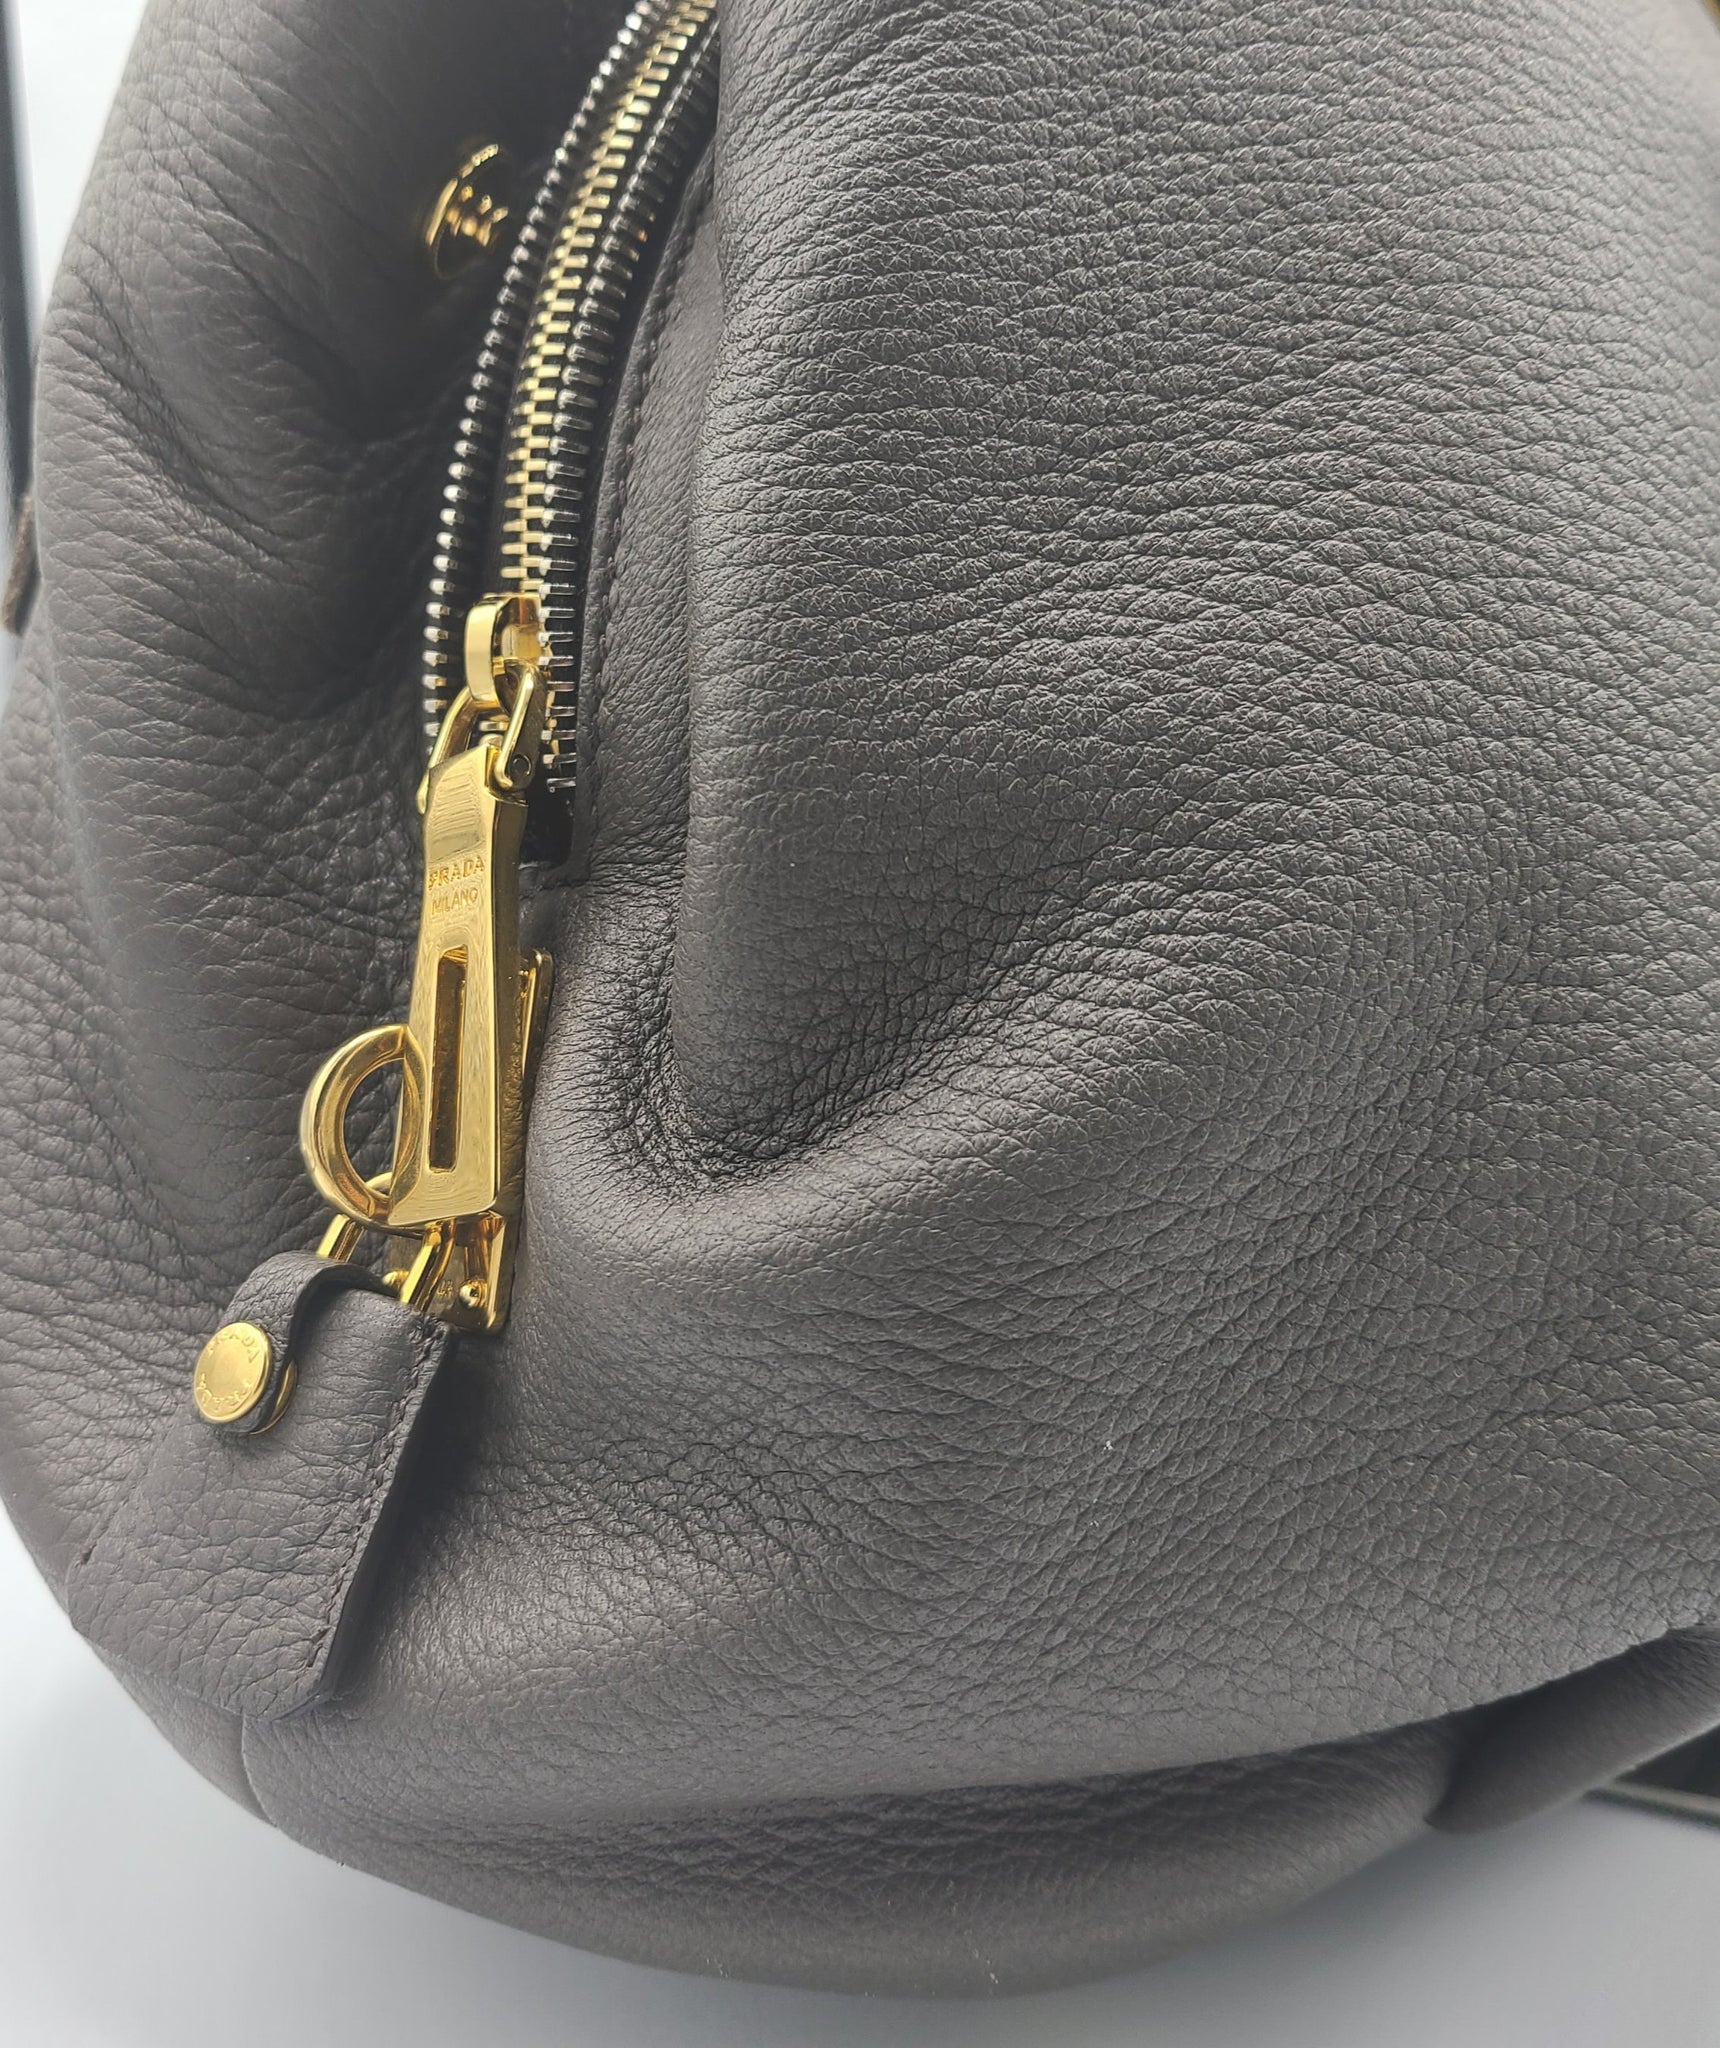 authentic prada handbag deer Skin - large Shopping tote